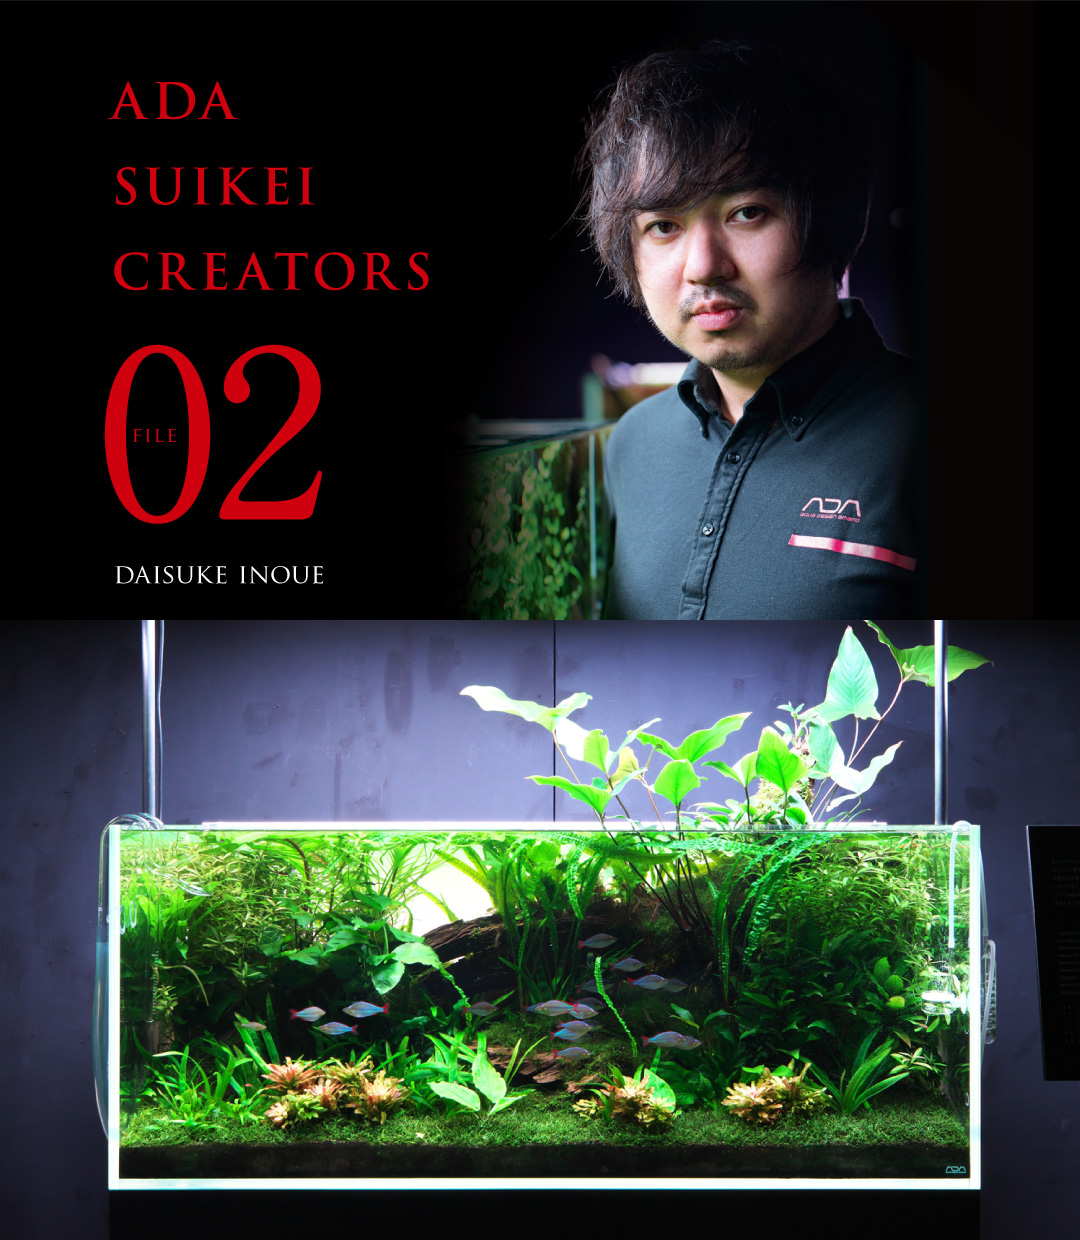 ADA SUIKEI CREATORS #02「井上 大輔」